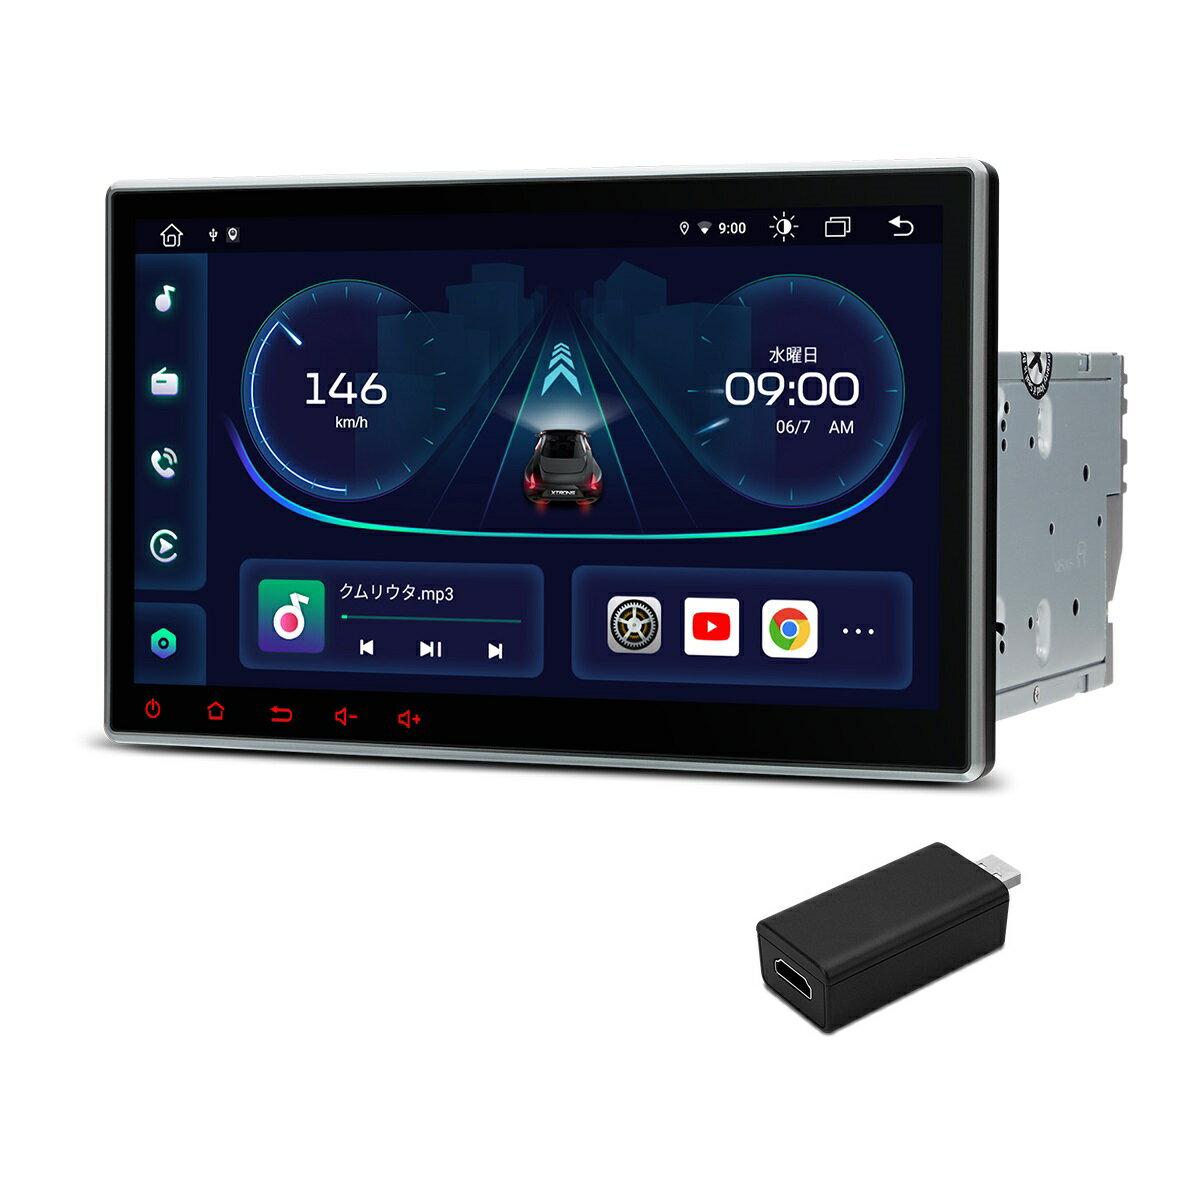 （TIE124-HDMI）XTRONS カーナビ 2DIN Android12 車載PC 10.1インチ 大画面 8コア DVDプレーヤー 4G通信 SIM対応 カーオーディオ Bluetooth iPhone CarPlay対応 android auto対応 ミラーリング WiFi マルチウインドウ HDMI出力変換器付